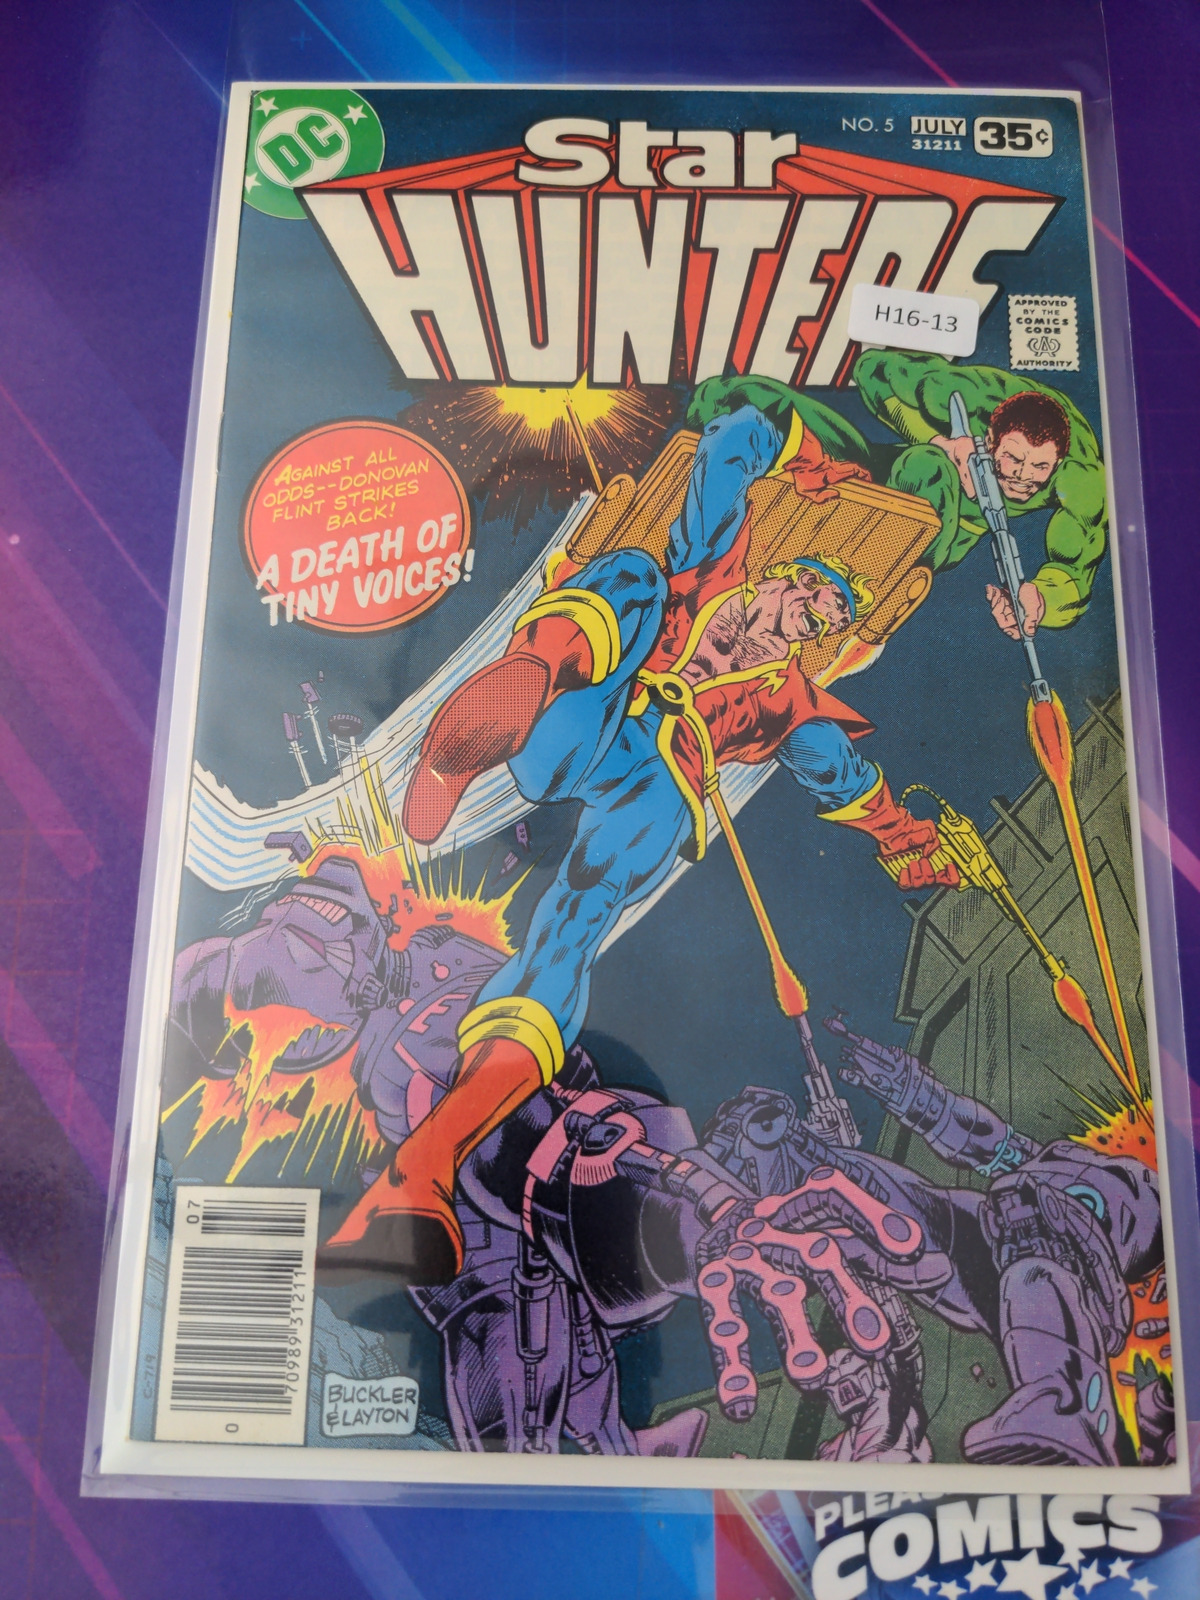 STAR HUNTERS #5 HIGH GRADE NEWSSTAND DC COMIC BOOK H16-13